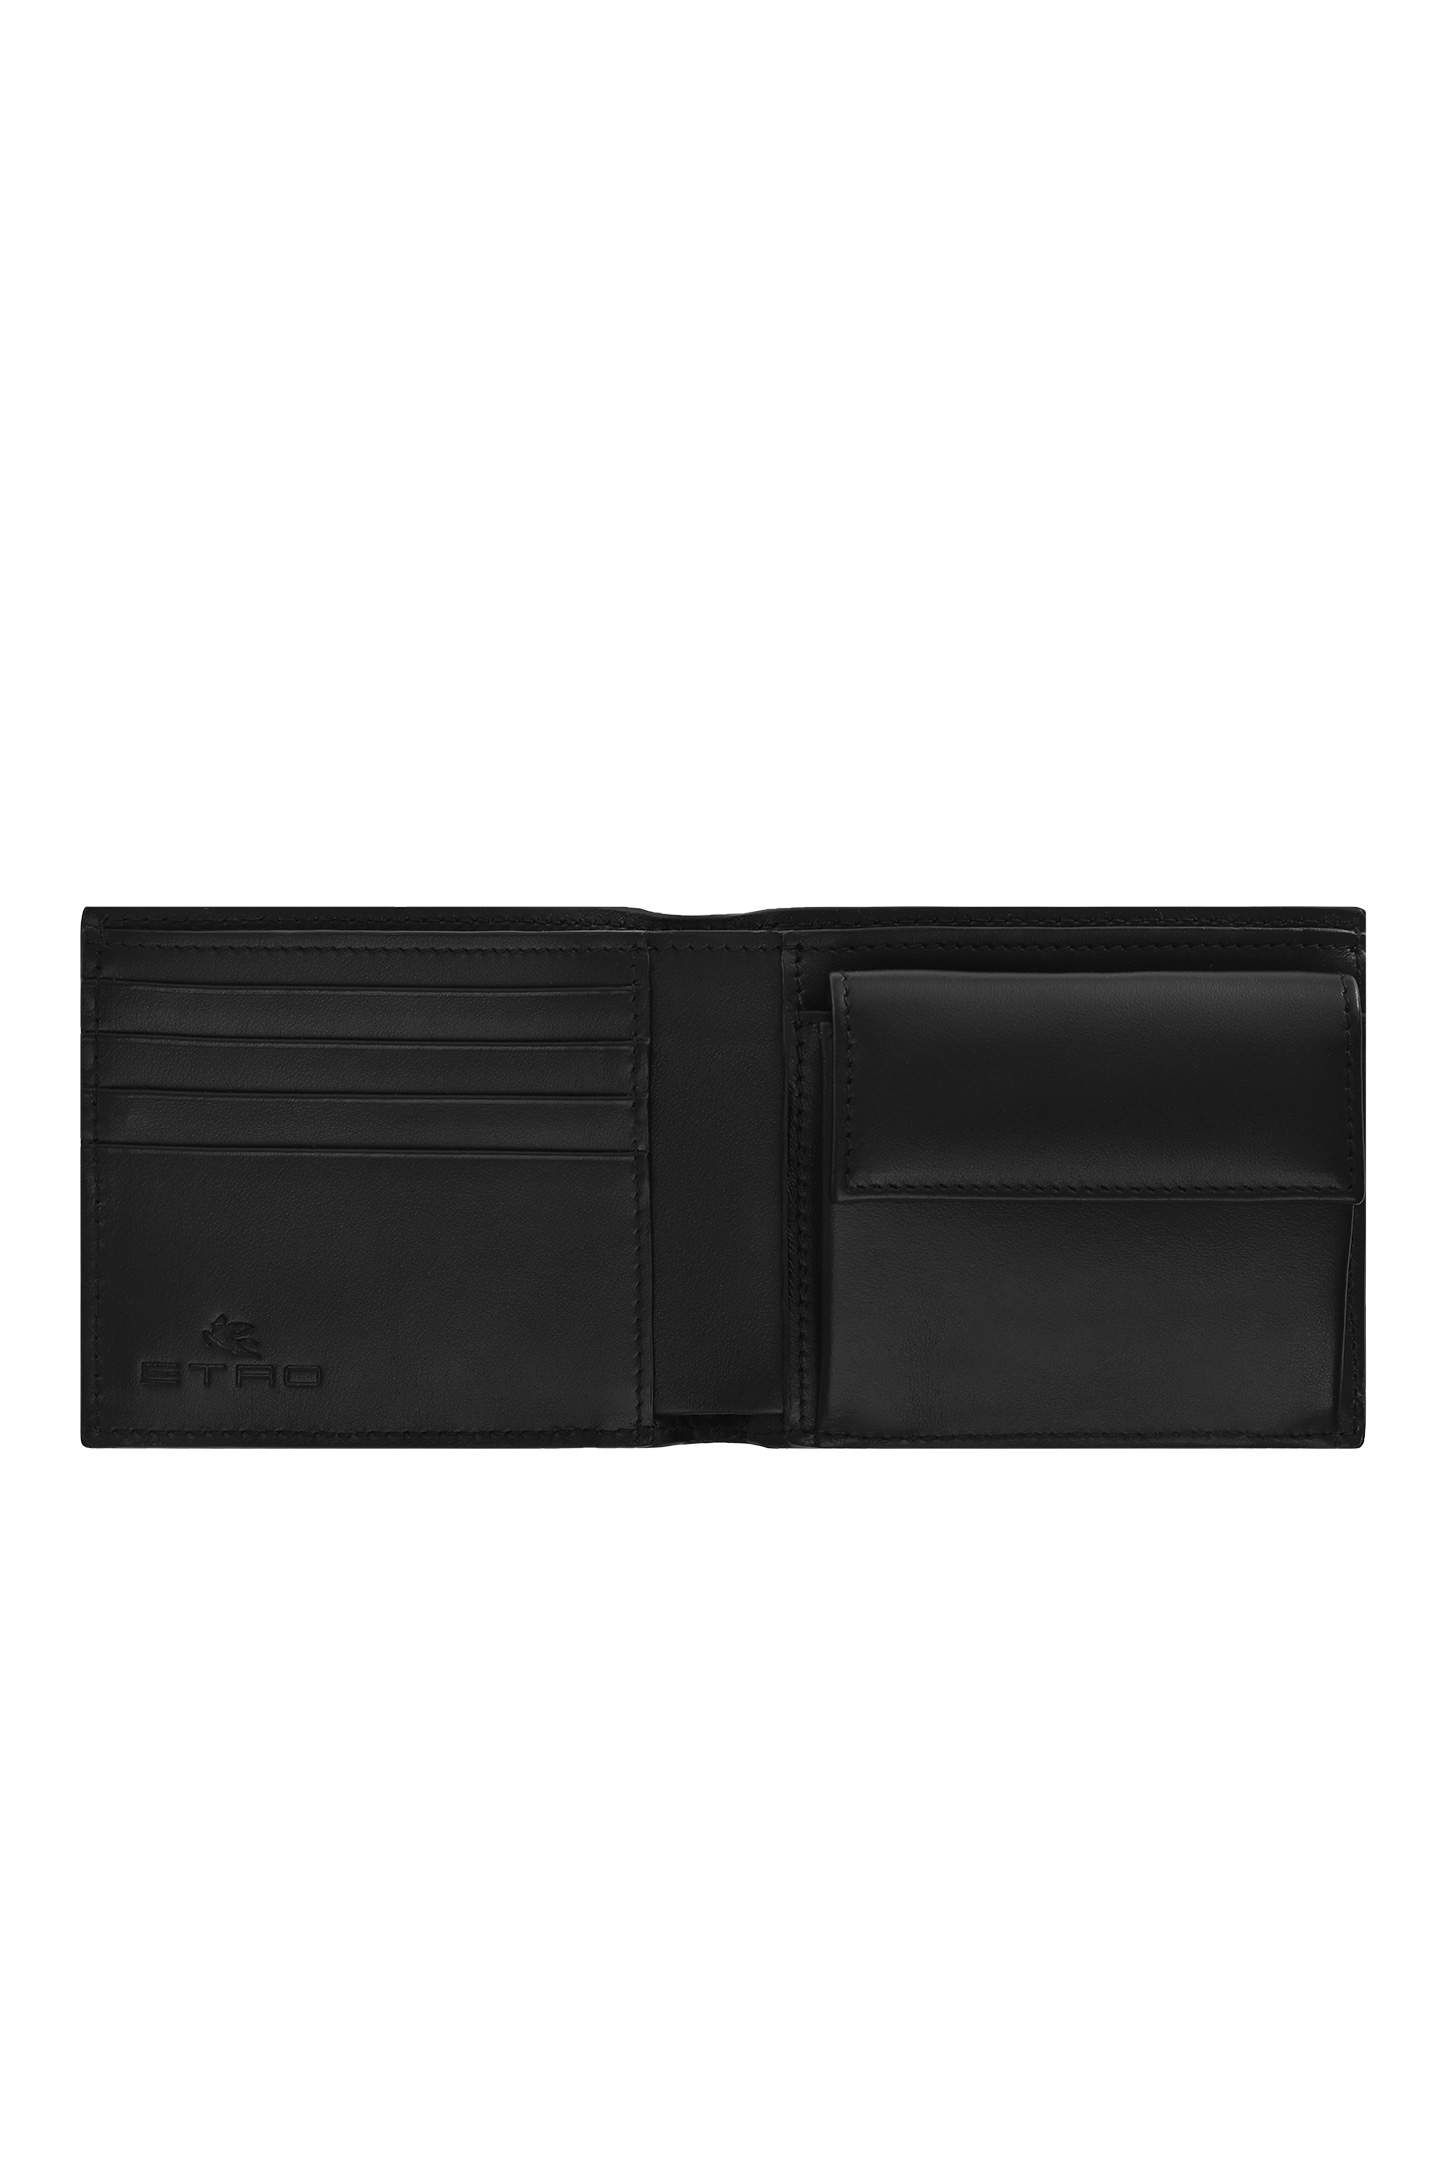 Кожаное портмоне ETRO MP2D0004 AU015, цвет: Черный, Мужской